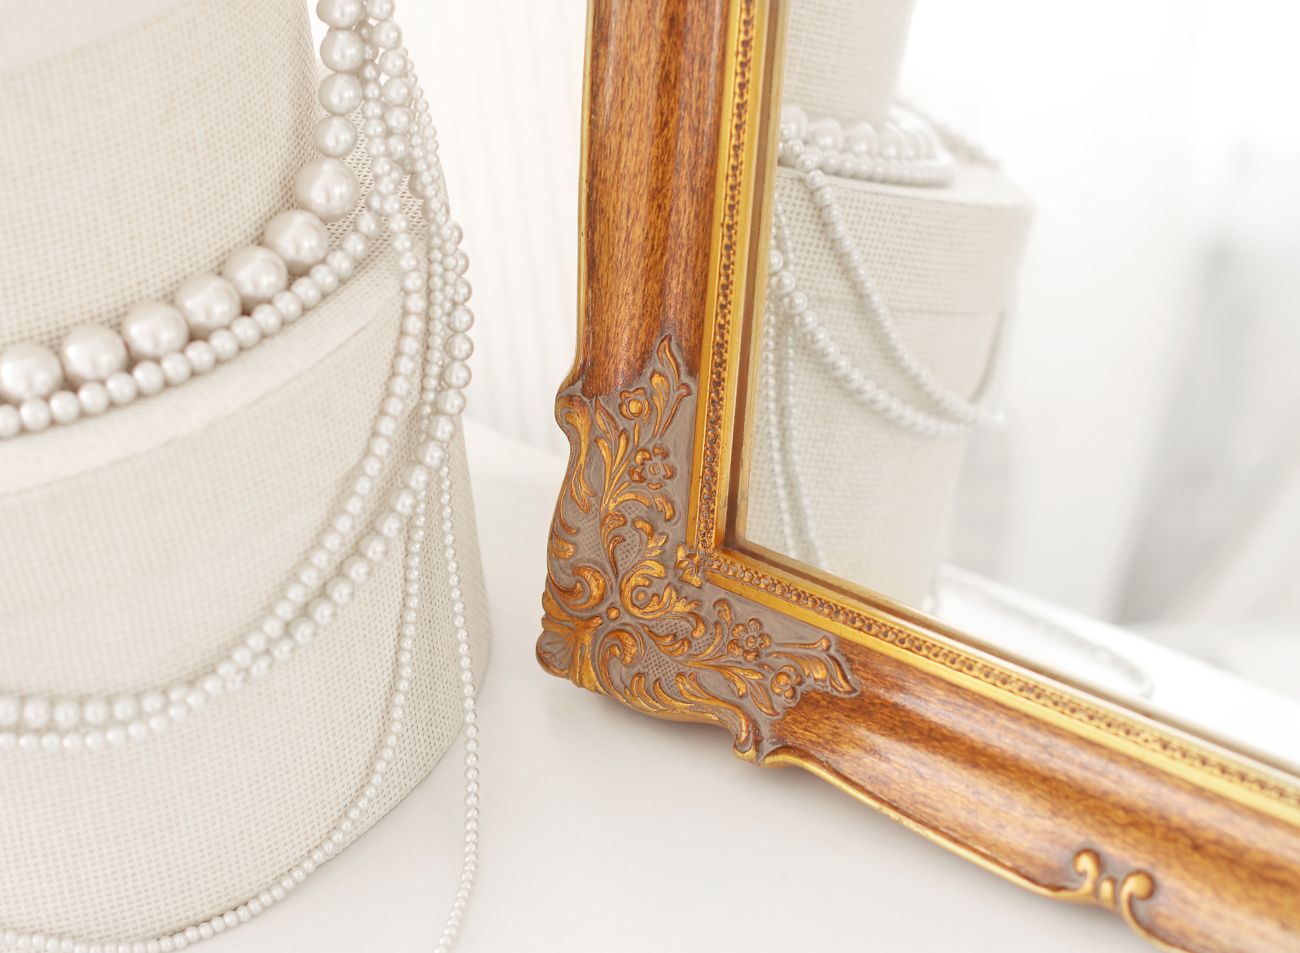 Ozdobný roh blondelového rámu na malé zrcadlo s hnědou patinou | © Frame-it.cz